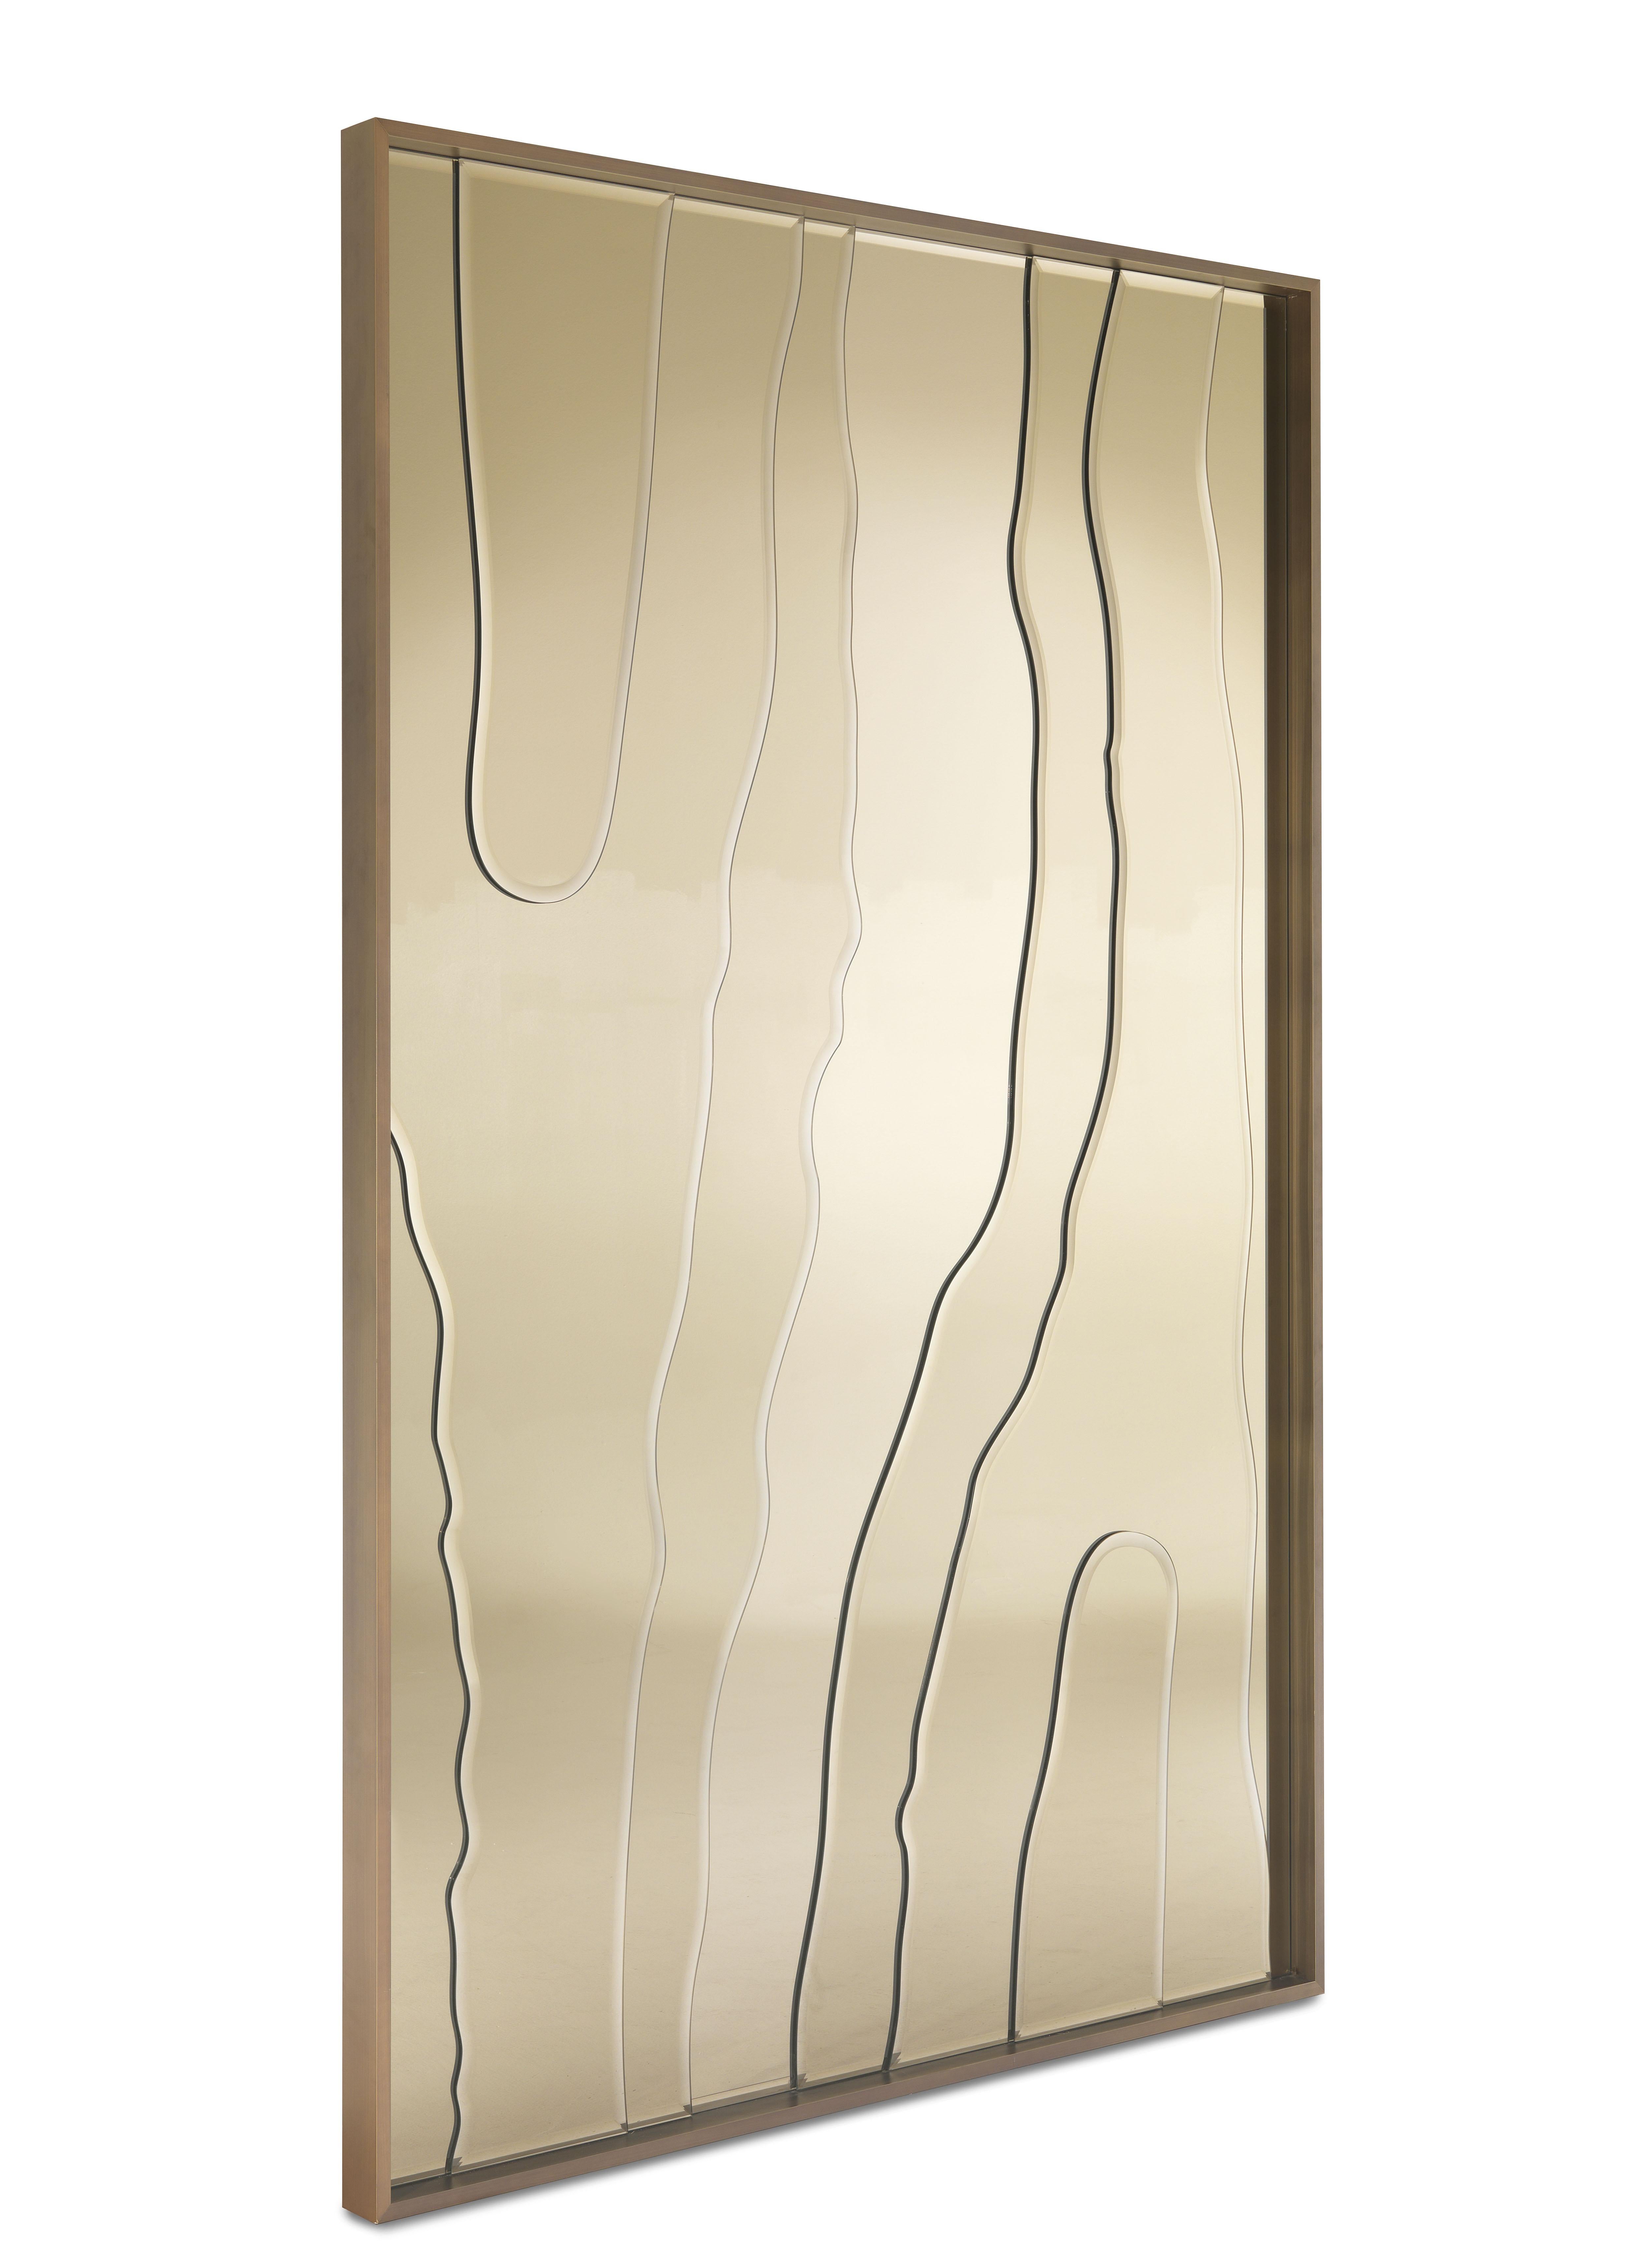 Sahara Standspiegel mit mehrschichtiger Holzstruktur, bedeckt mit einem abgeschrägten Bronzespiegel. Gestell aus Metall in gebürsteter Bronzeausführung.